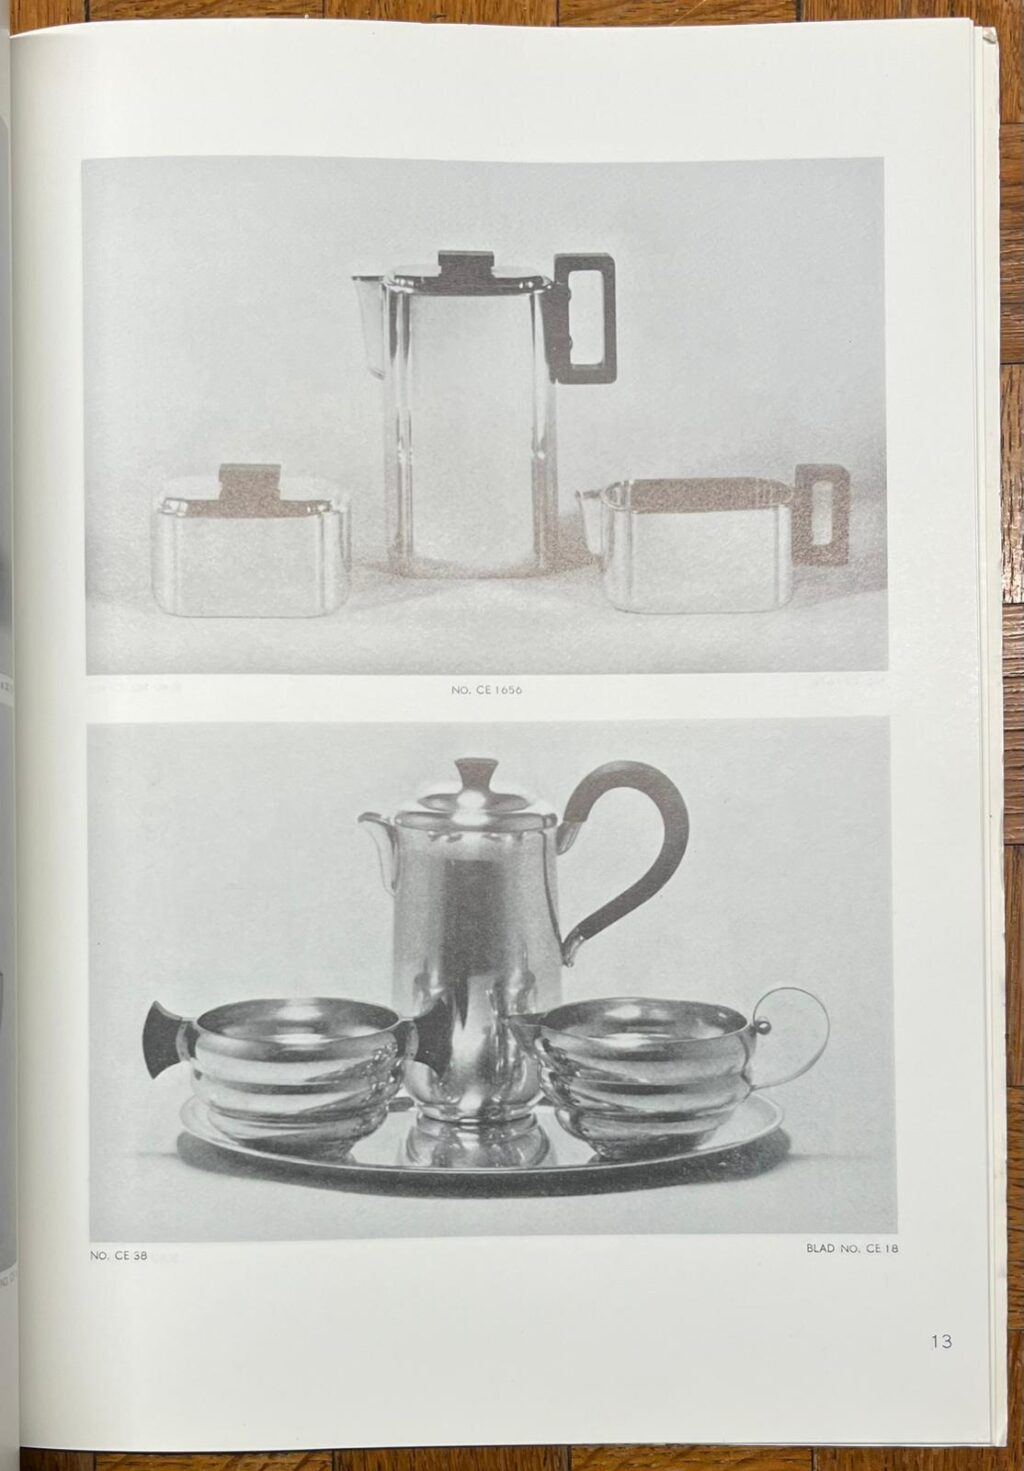 Silverware Catalogue, 1988, Christa Ehrlich | Christa Ehrlich. Weens Ontwerpster in Nederland, [s.l.], 1988, 53 pp.